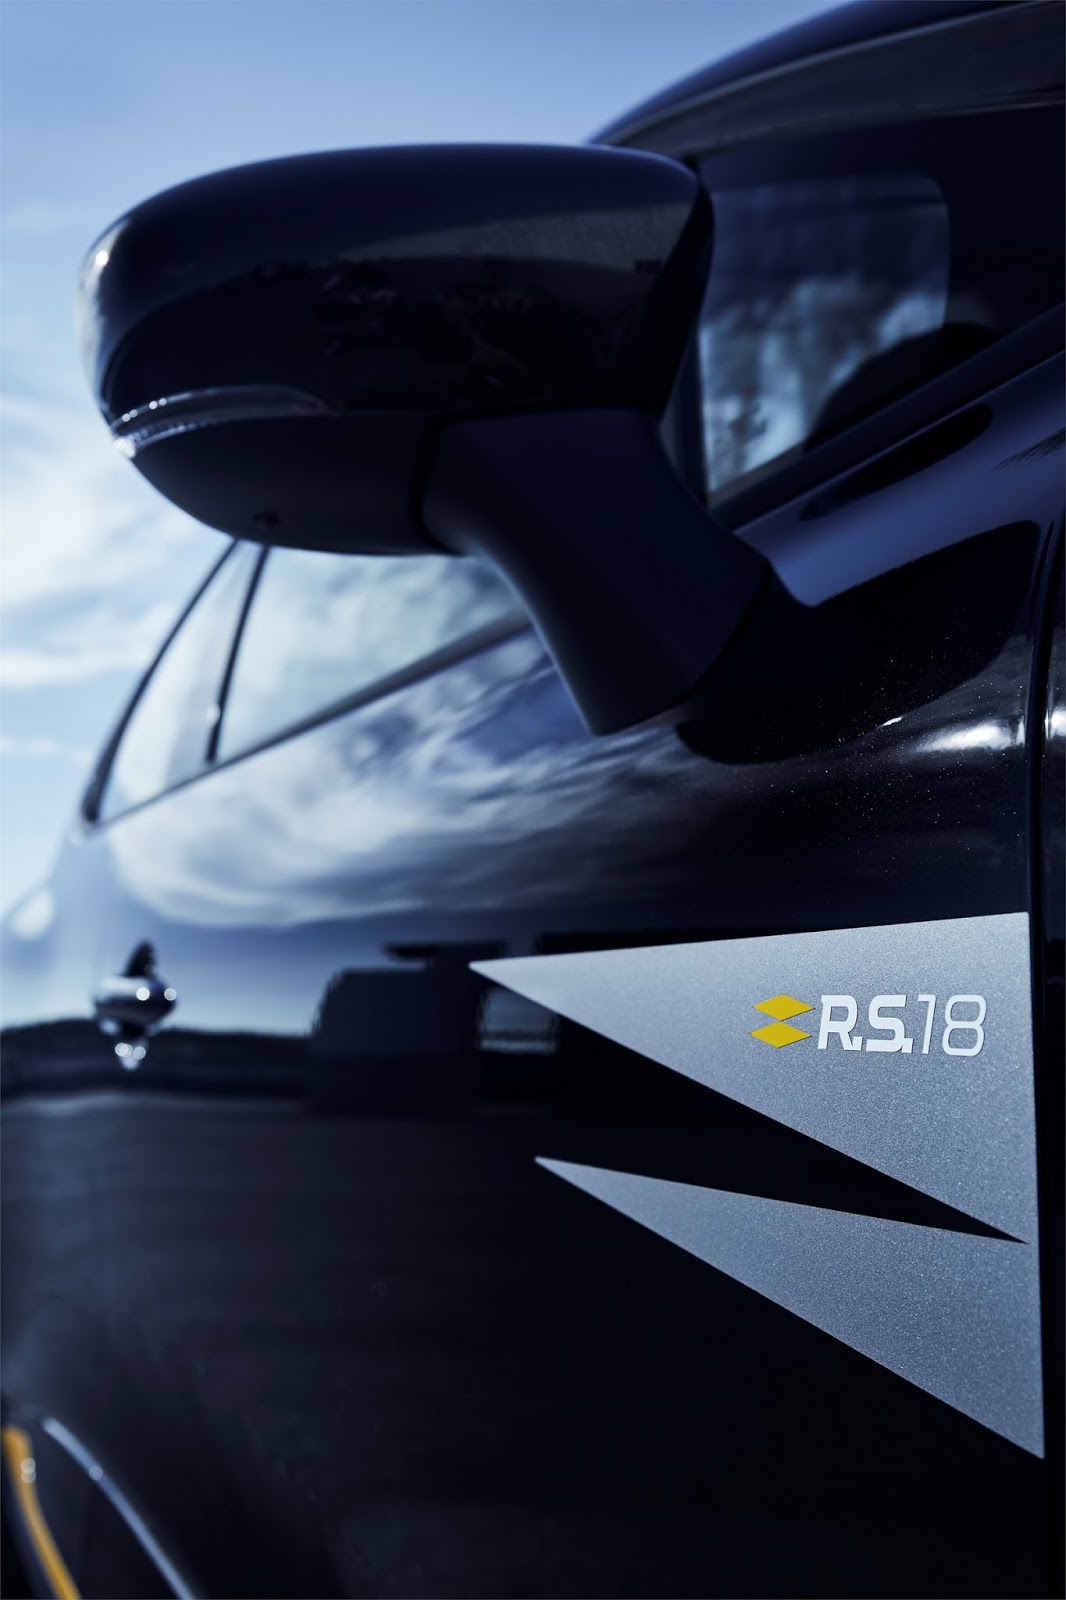 4RS2] Références Renault des monogrammes et logos noirs (idem Clio RS18 ou  option Black pack) - Page 2 - Clio RS Concept ®